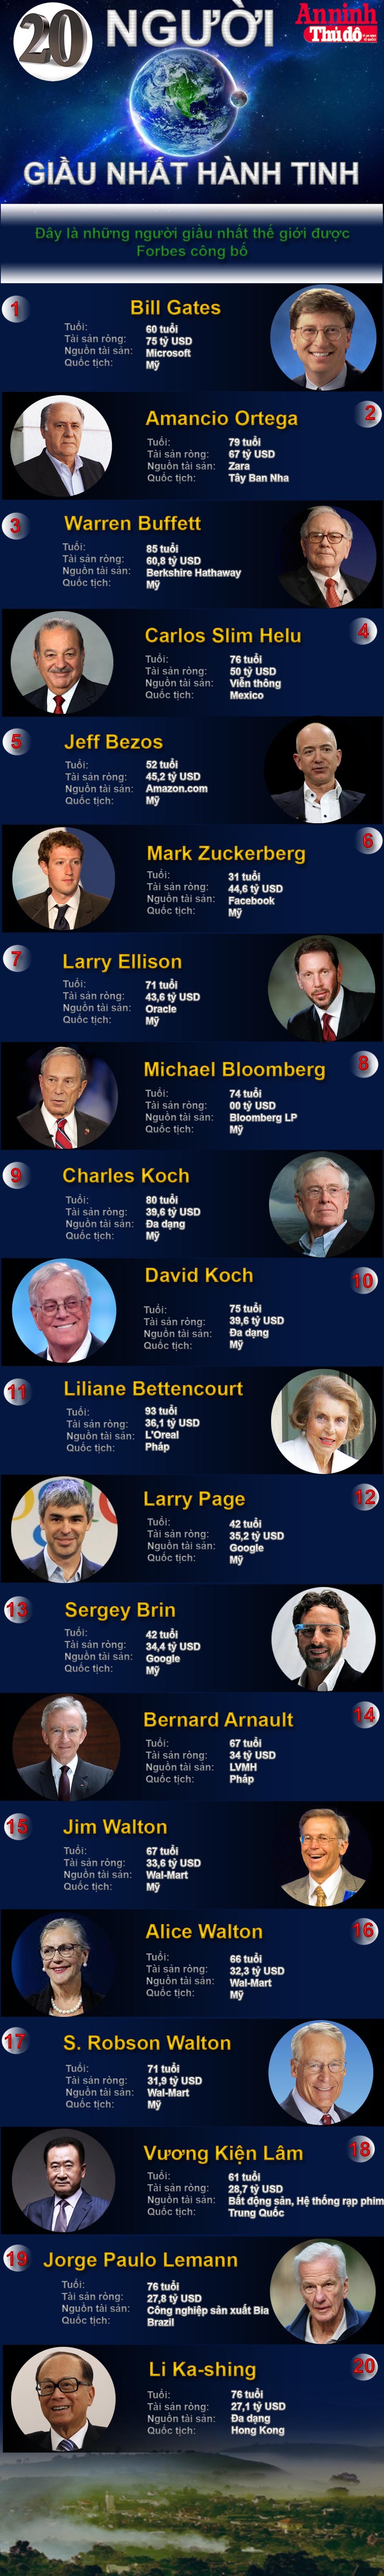 [Infographic] 20 siêu tỷ phú giàu nhất thế giới - họ là ai? ảnh 1